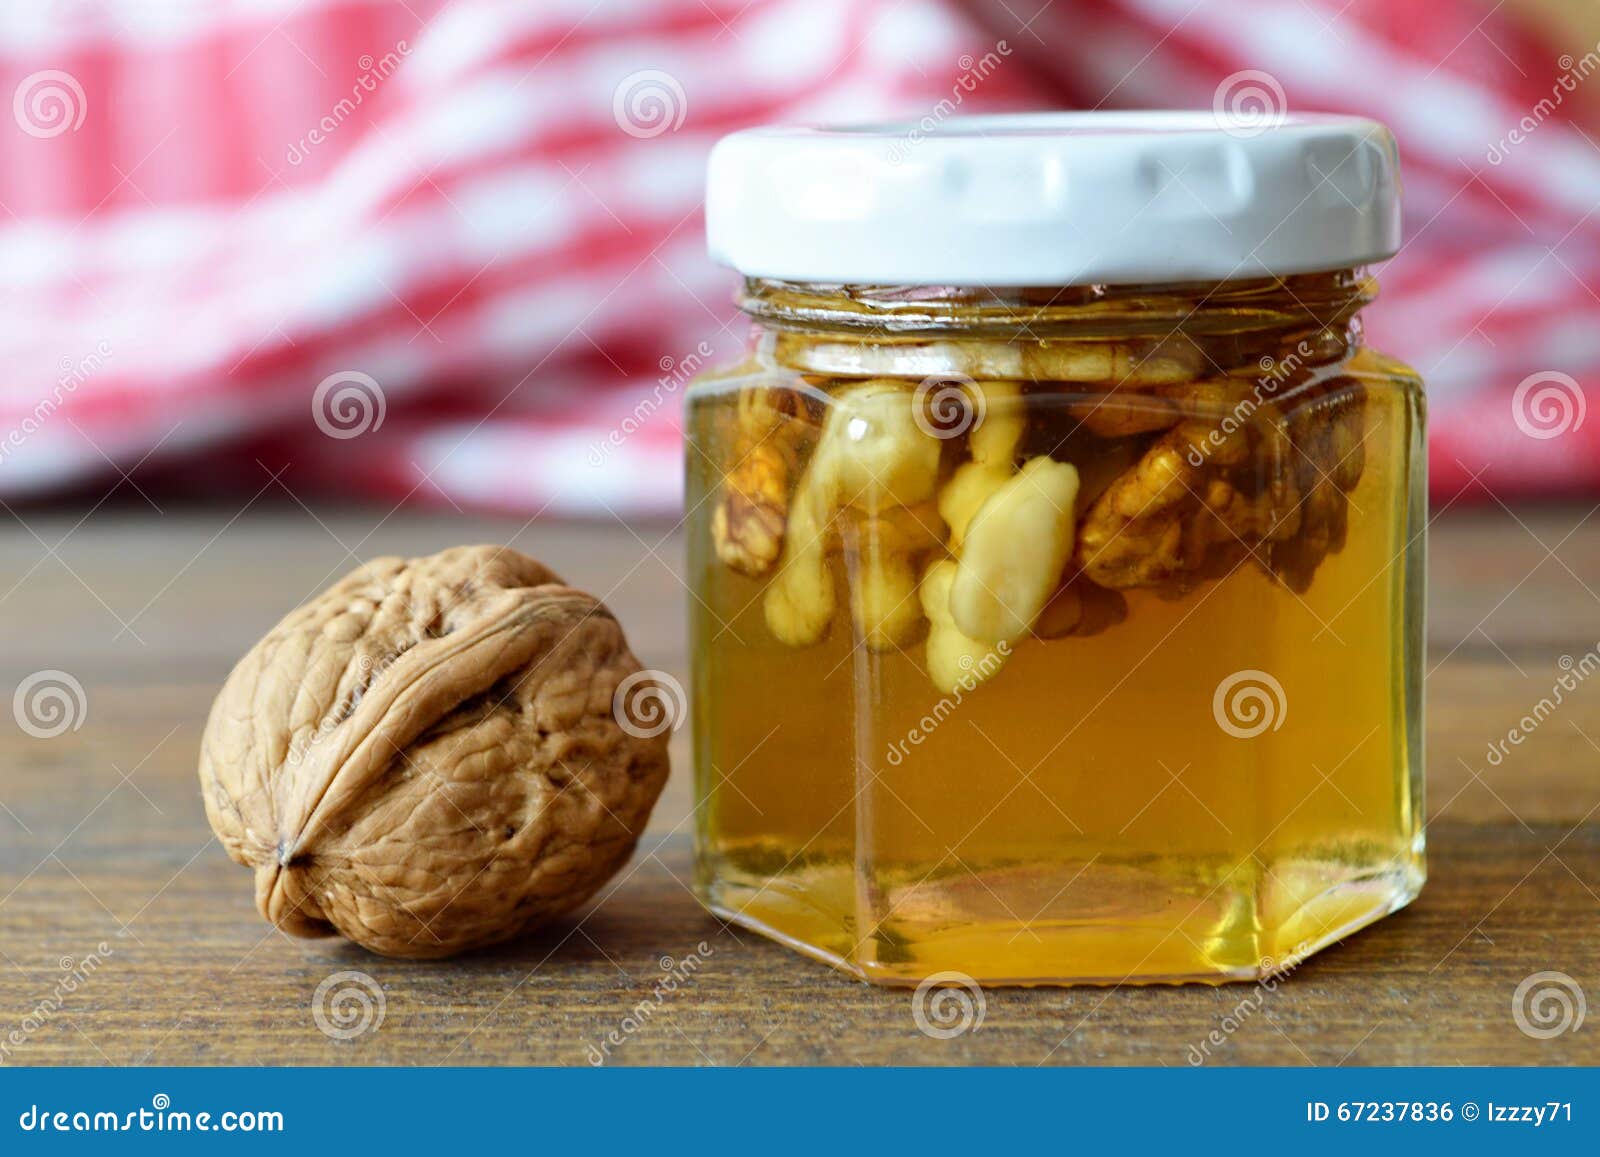 Мед орехи лимон польза. Медовый орех. Алоэ мед лимон орехи. Грецкий орех с мёдом. Алоэ с медом и орехами.